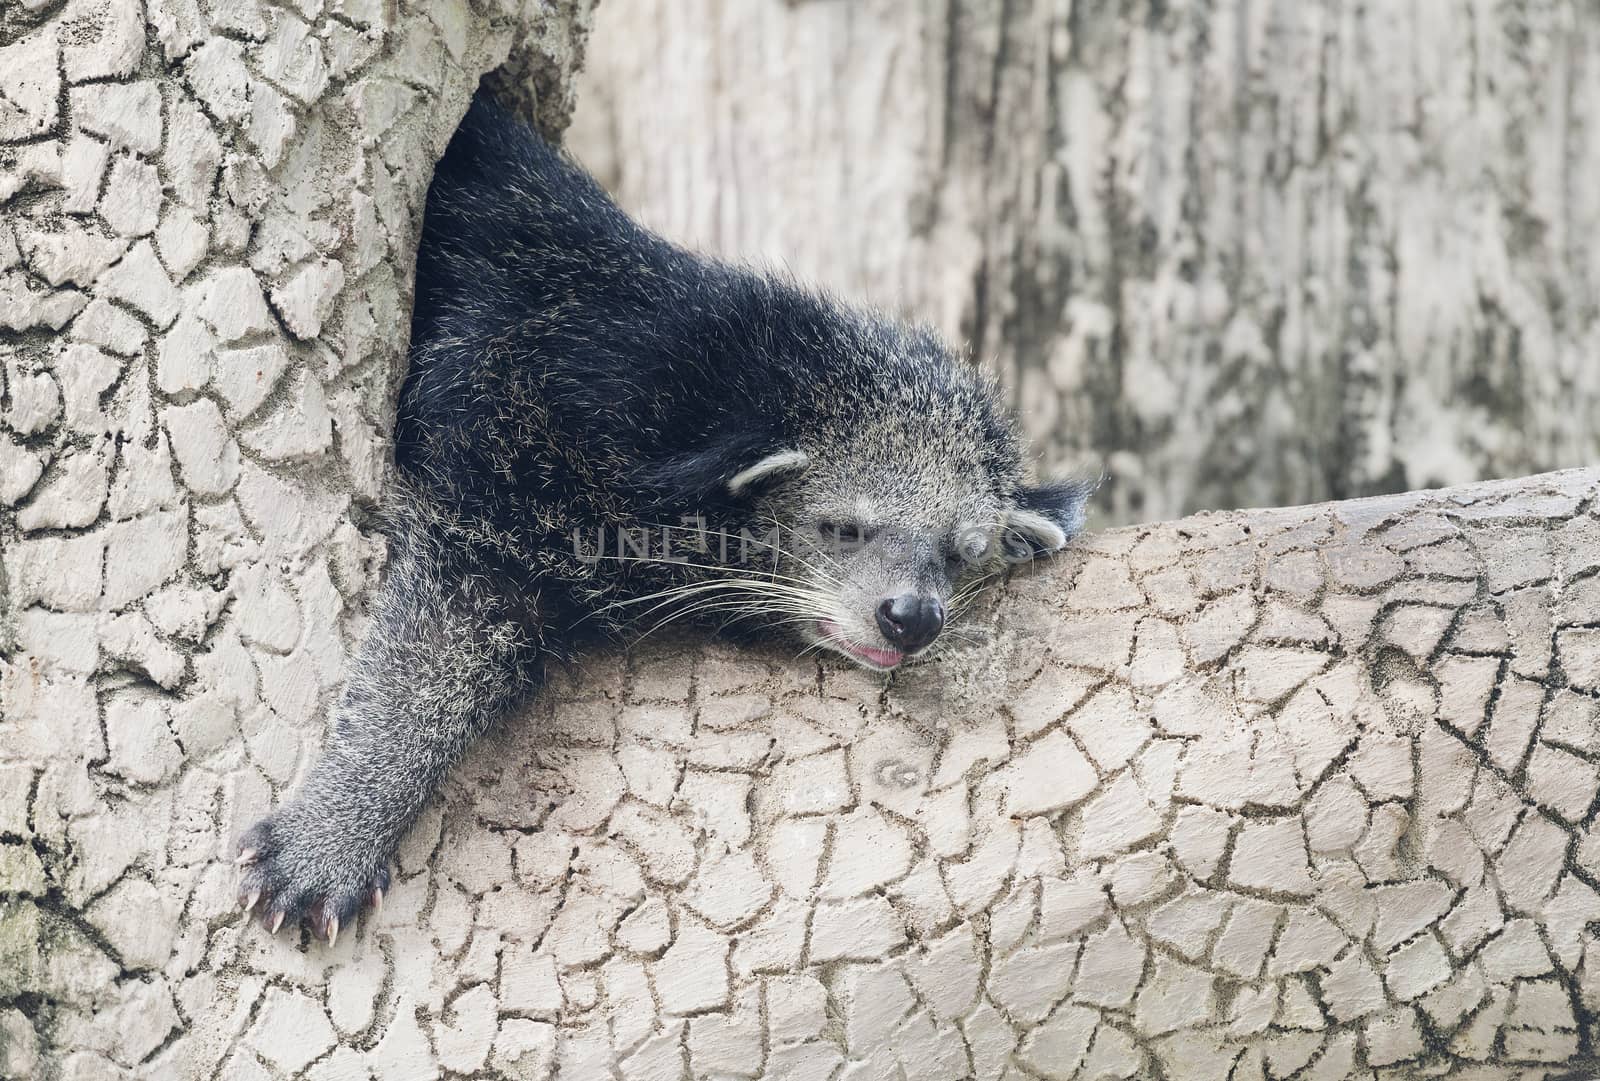 Binturong sleeping on a tree branch in a zoo